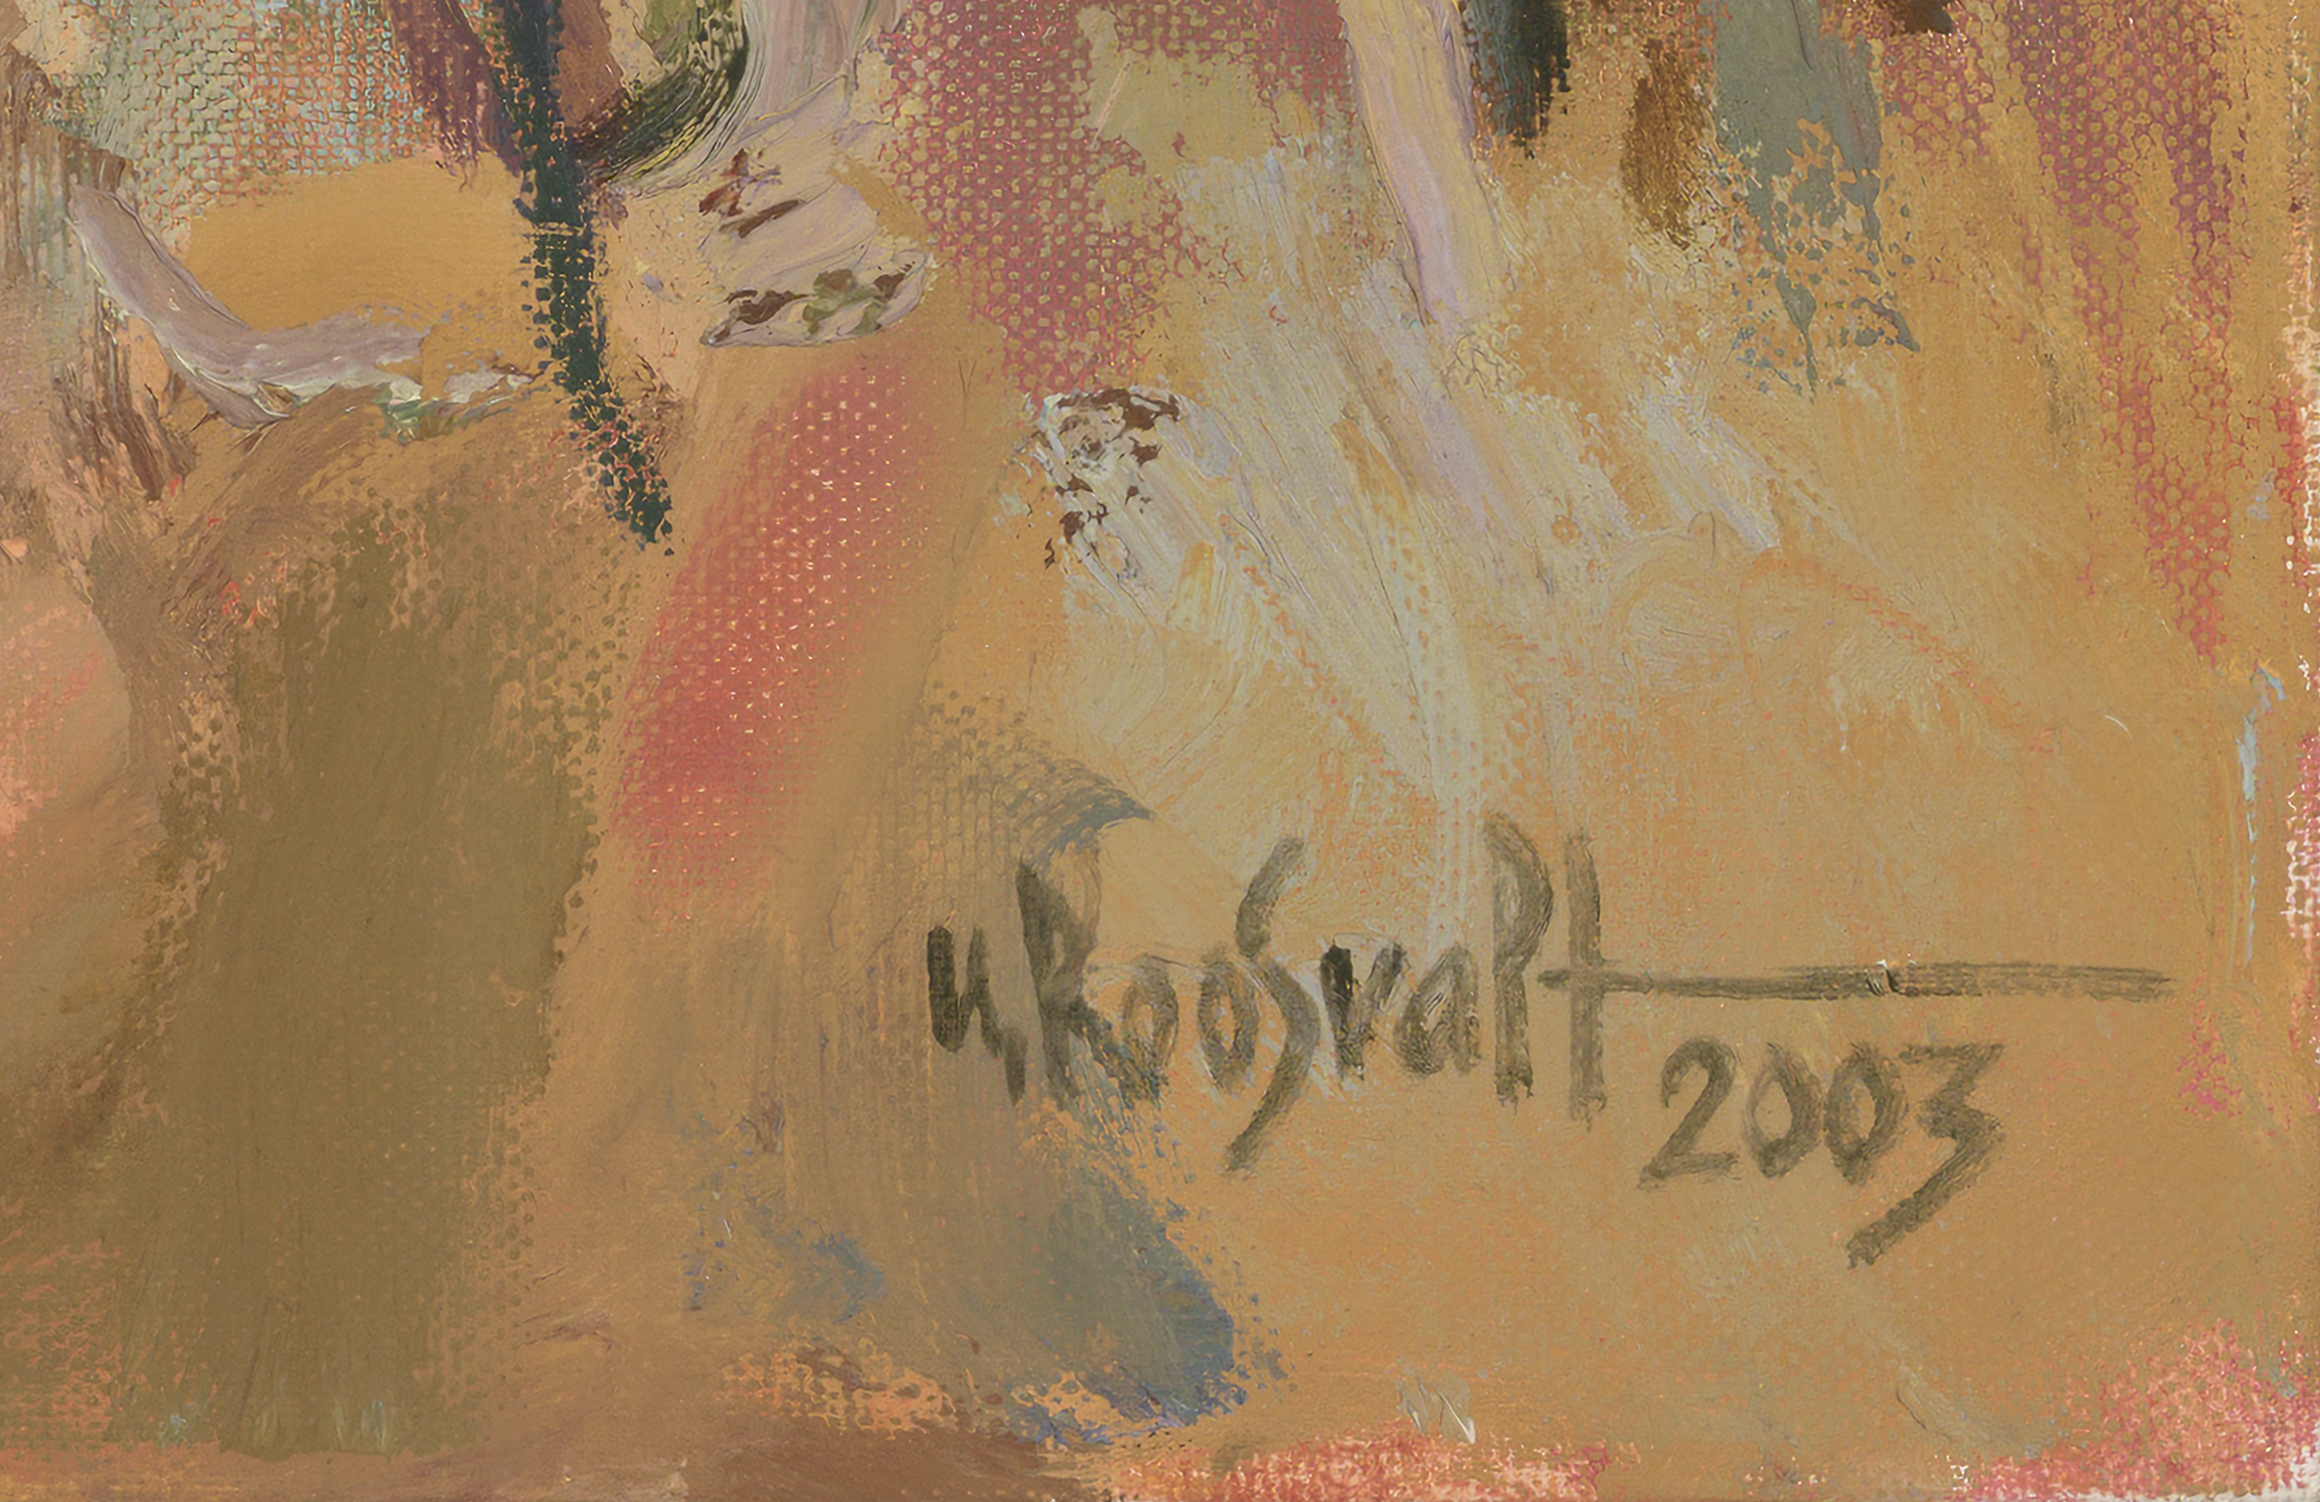 Uno Roosvalt “Taevalagi”, 2003. 120 x 130 cm.